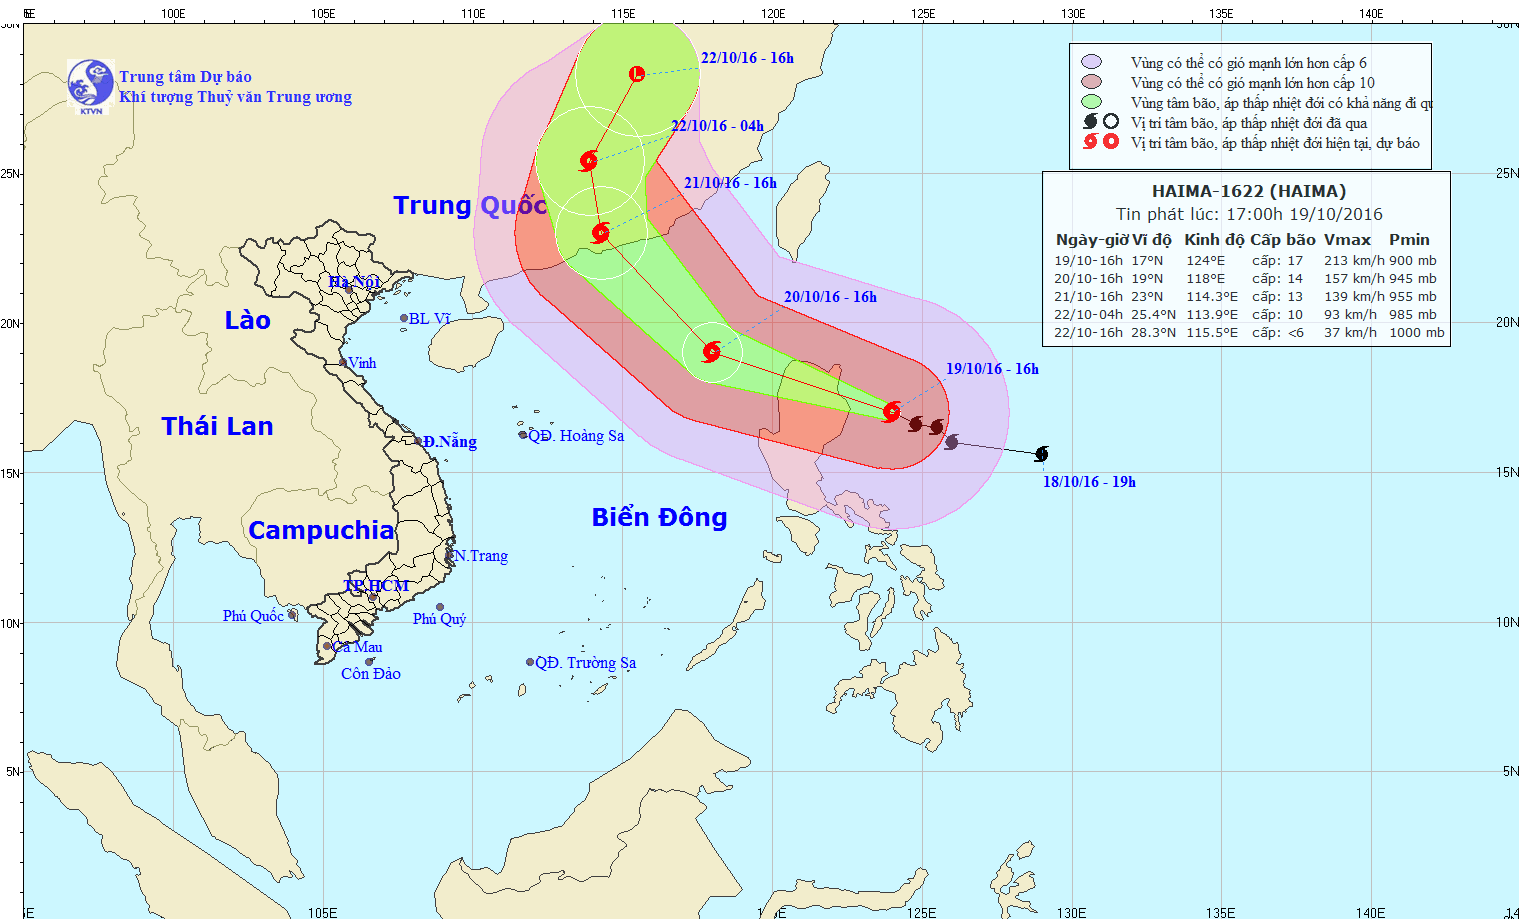 Tin áp thấp nhiệt đới (suy yếu từ bão số 7 - SARIKA) và tin bão gần Biển Đông (siêu bão HAIMA)  lúc 17h00 (19/10/2016)